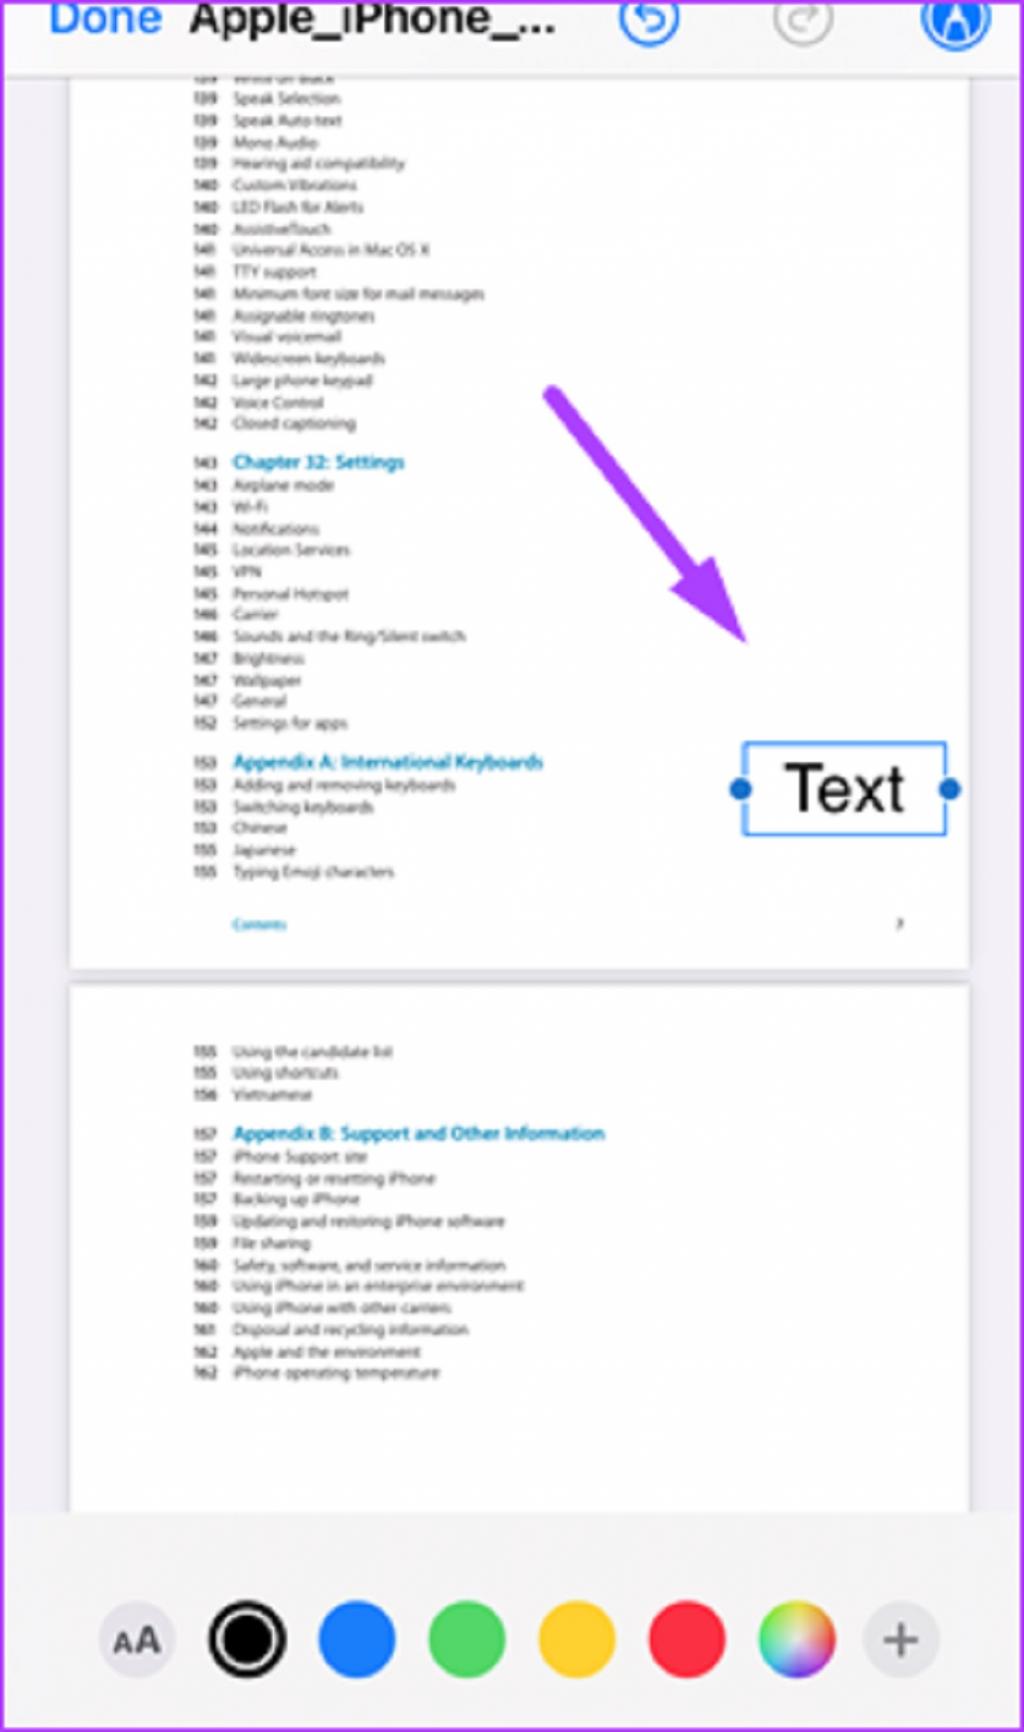 نحوه پر کردن فایل PDF با استفاده از برنامه iPhone Files